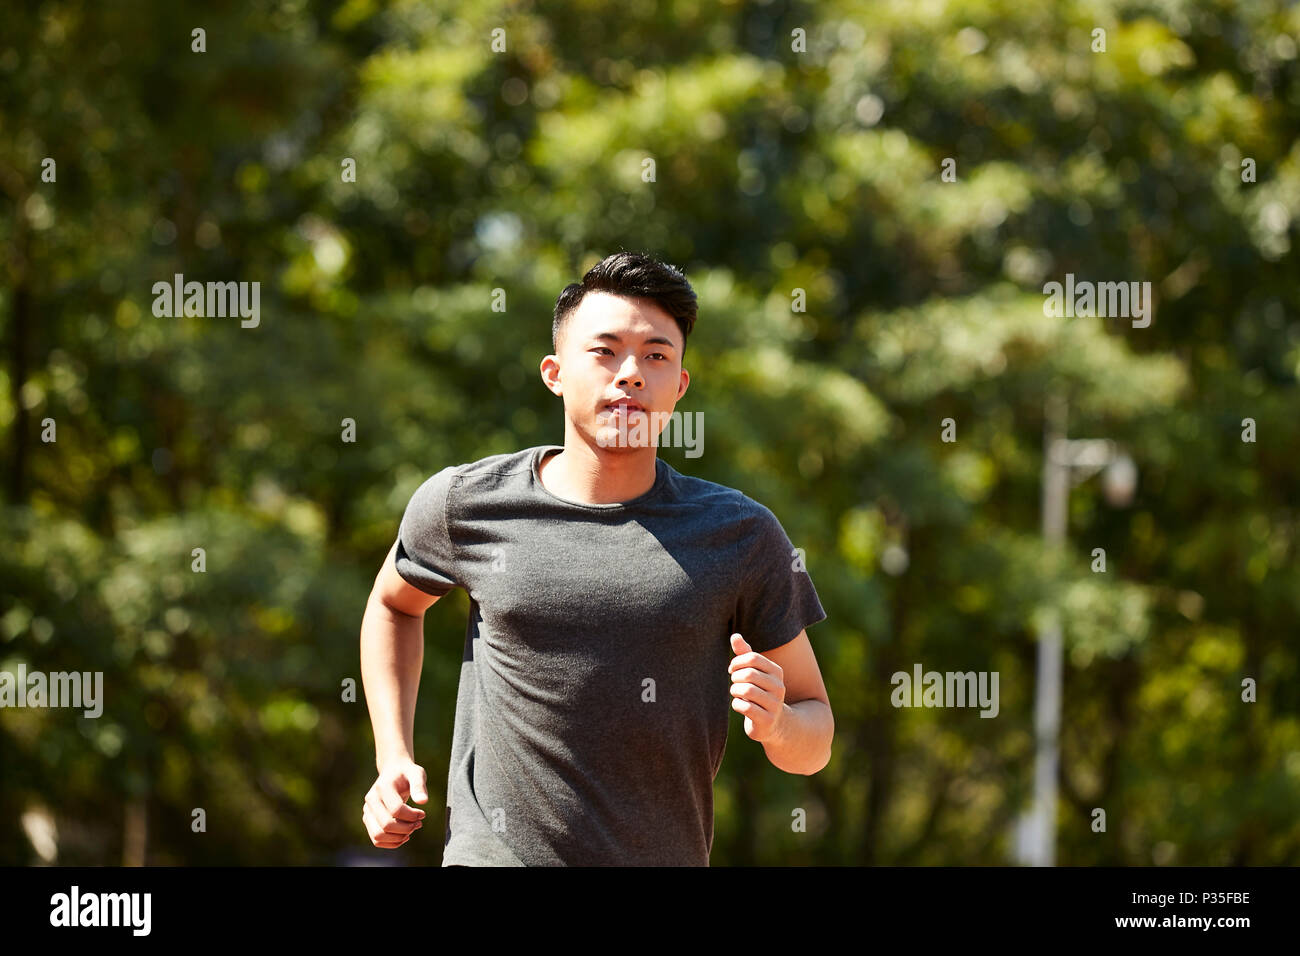 Hombre adulto joven asiático atleta corriendo y capacitación. Foto de stock